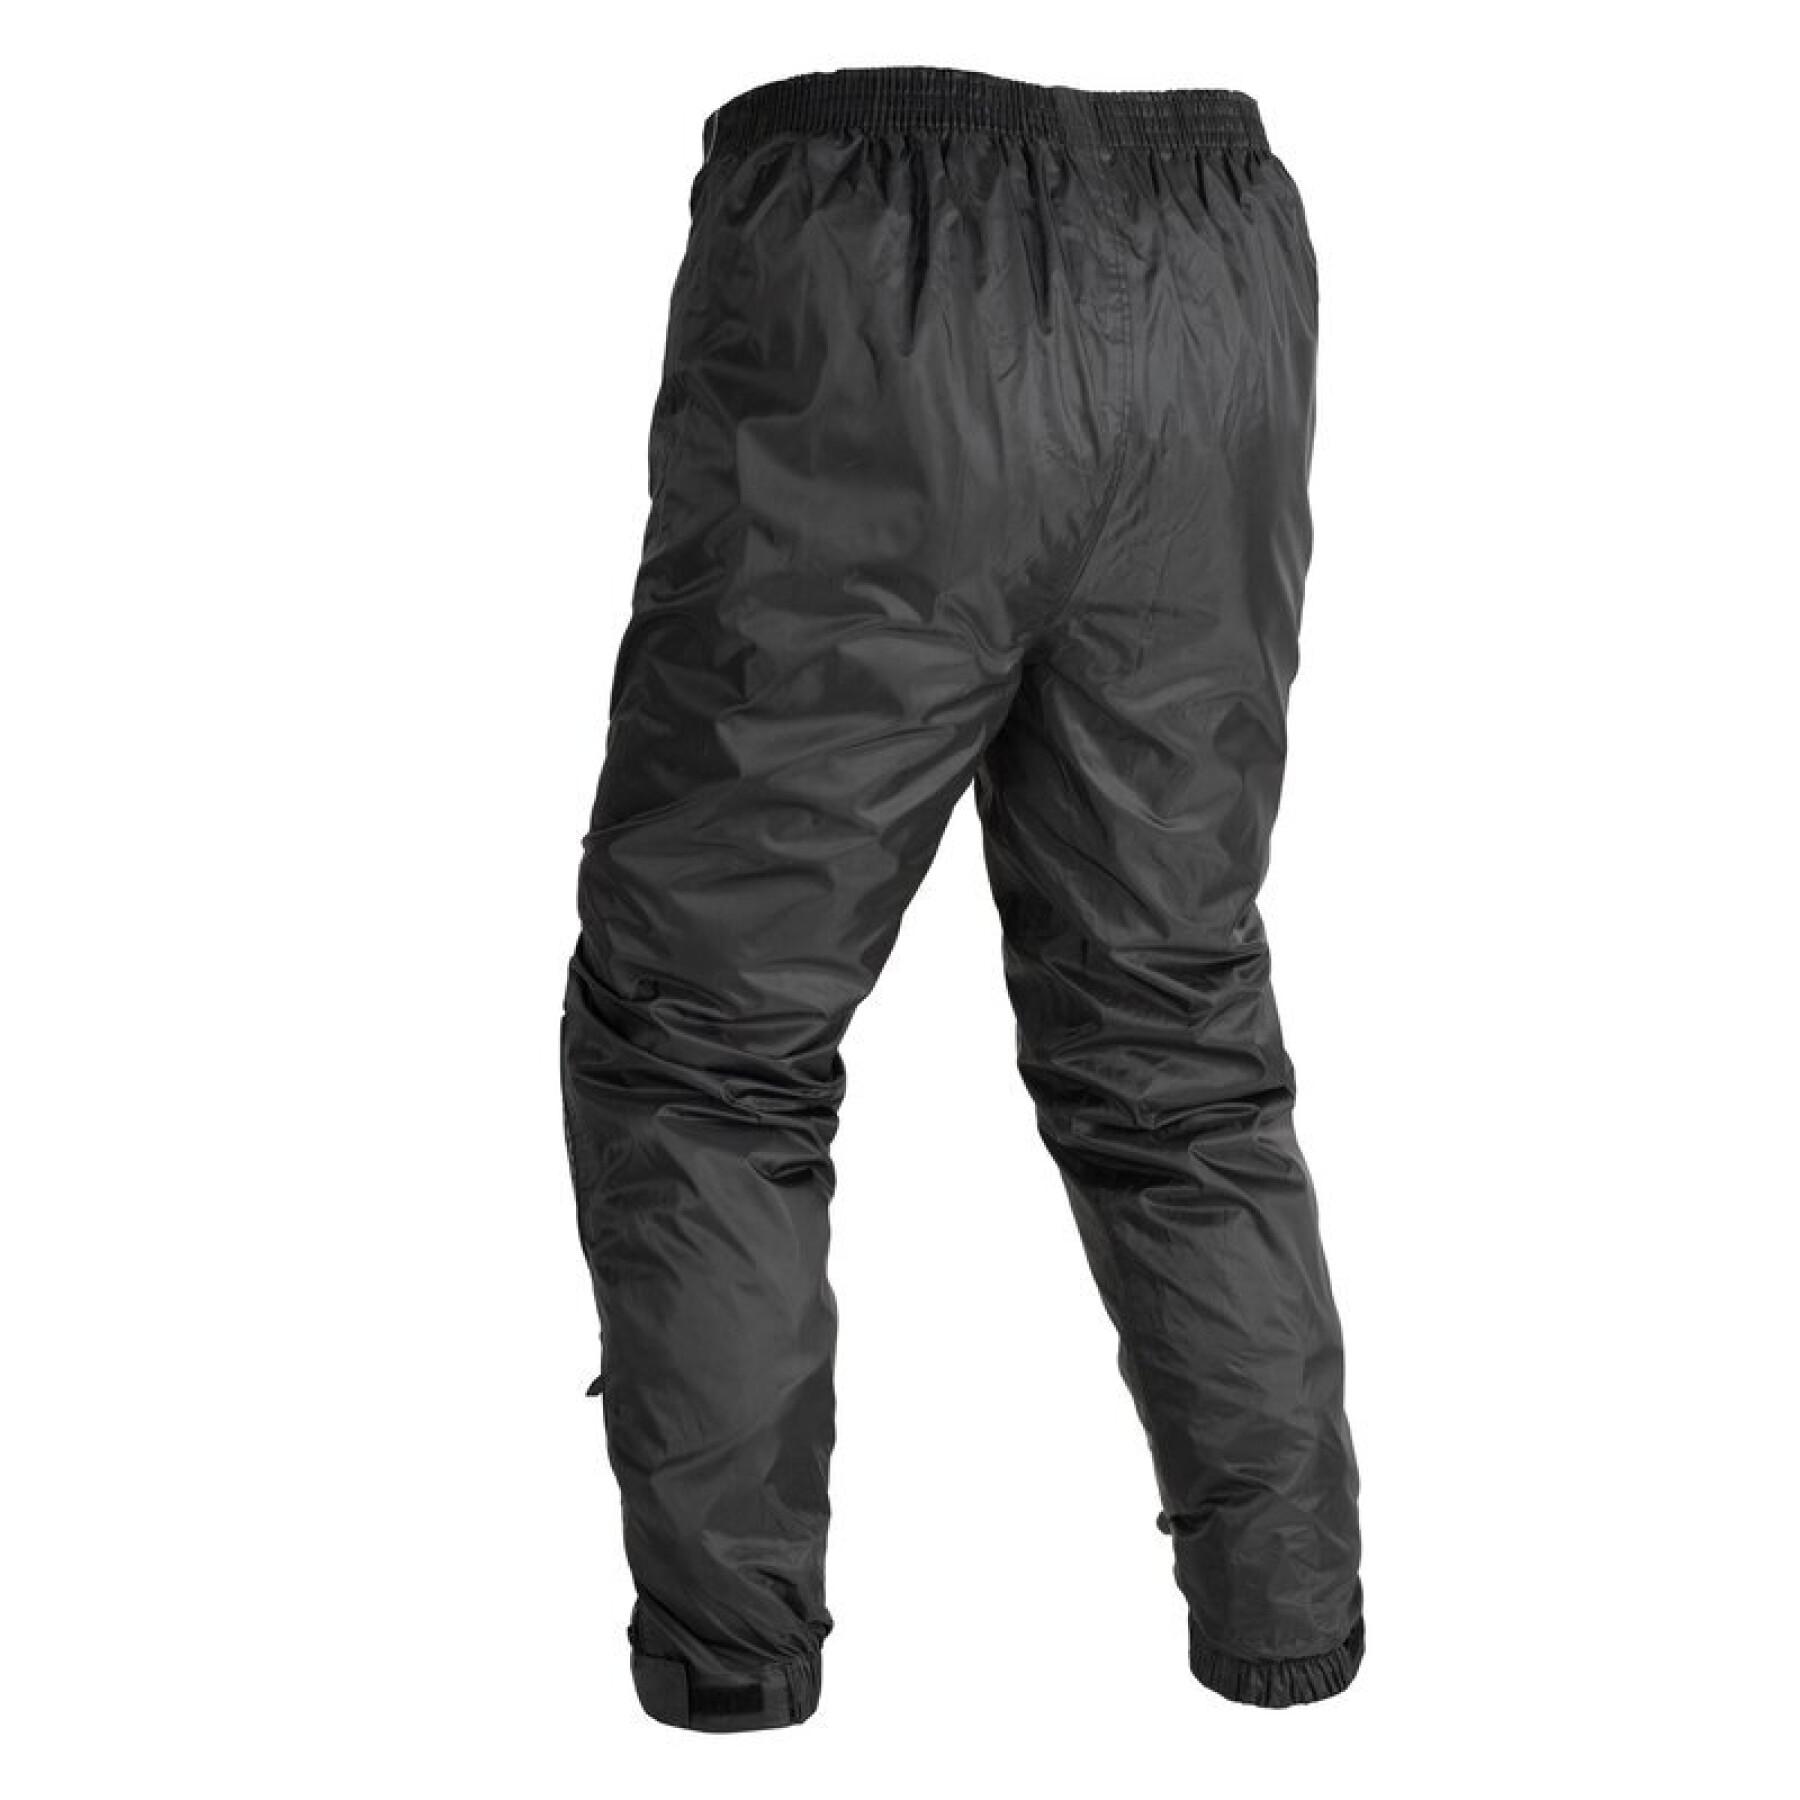 Pantalón inpermeable para moto Oxford